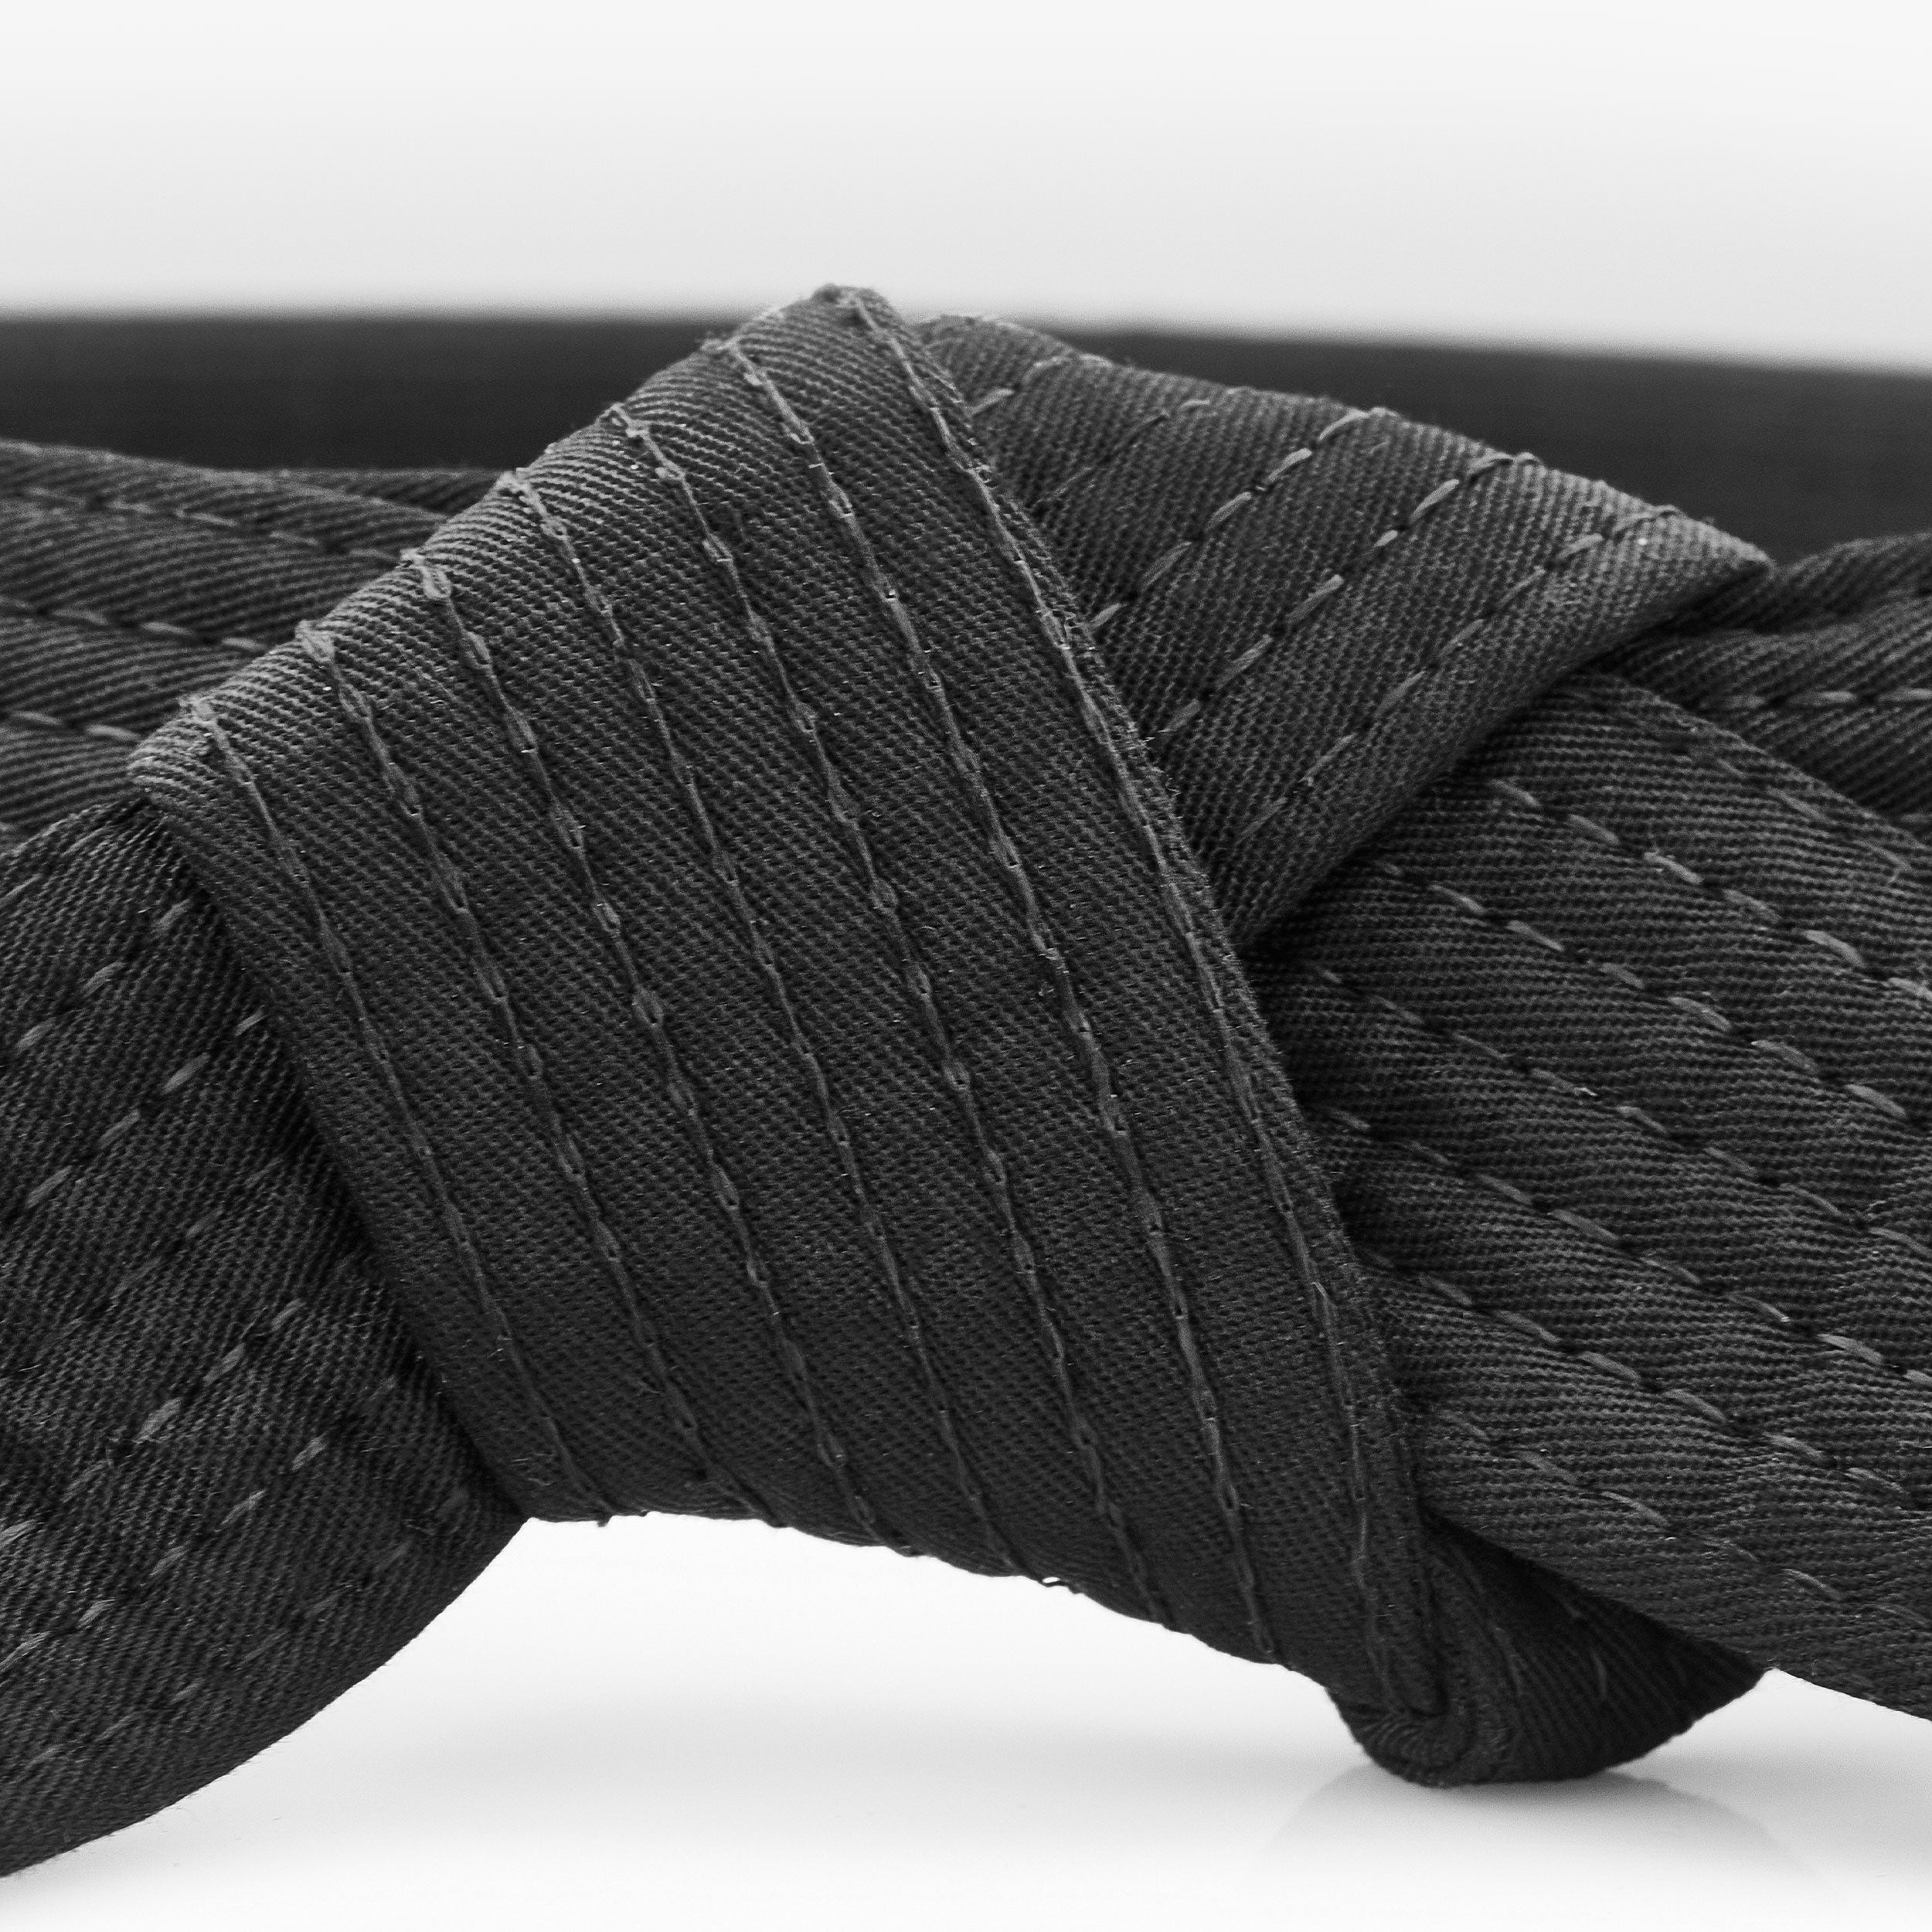 martial arts belt close up